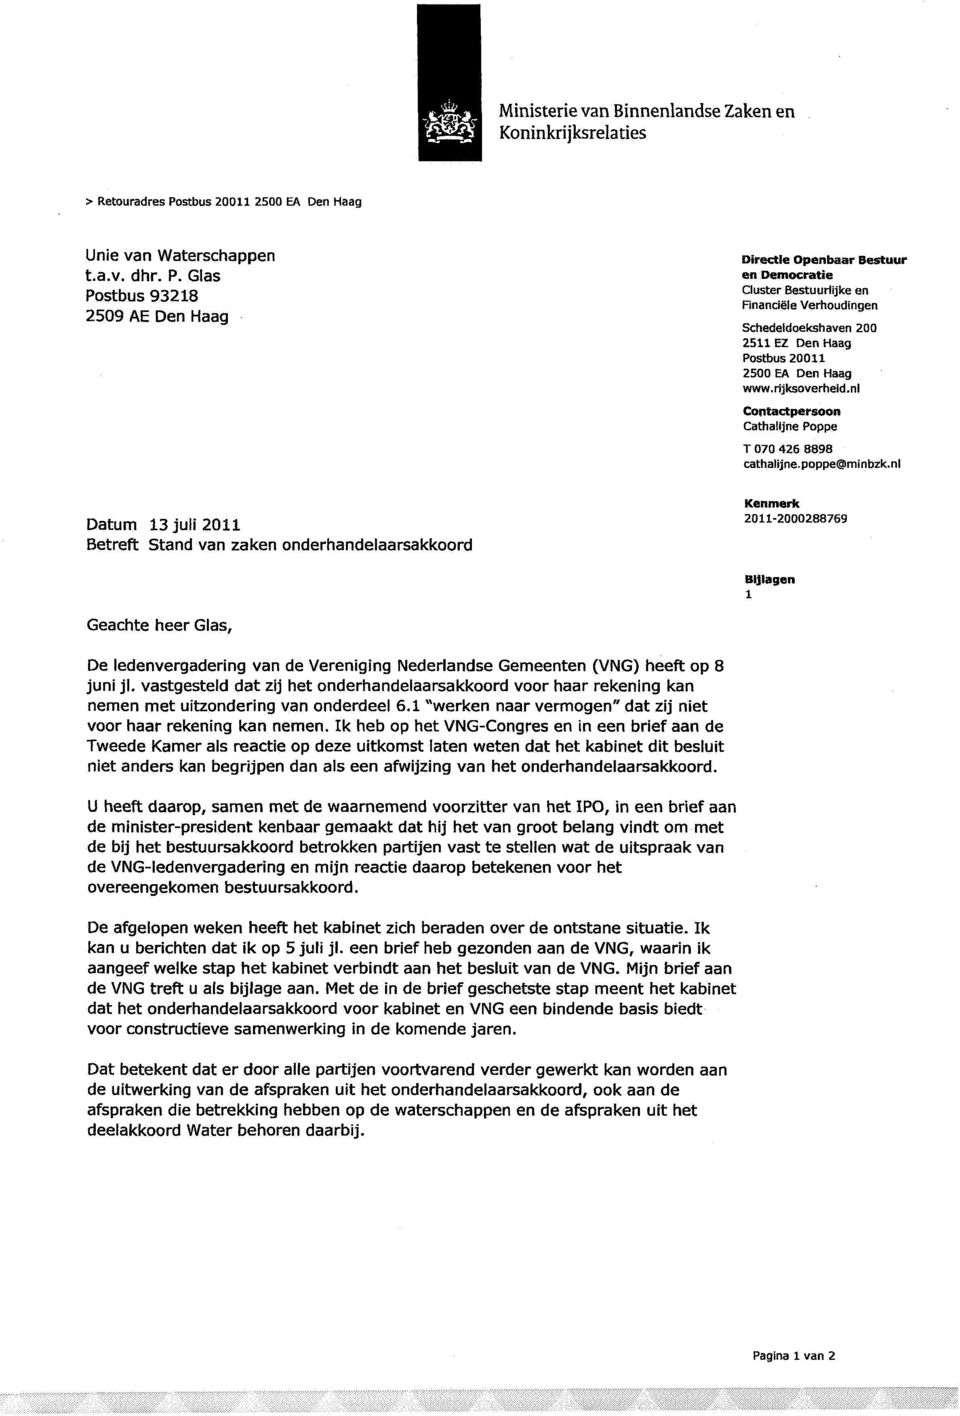 Glas Postbus 93218 2509 AE Den Haag Datum 13 juli 2011 Betreft Stand van zaken onderhandelaarsakkoord Directie Openbaar Bestuur en Democratie Cluster Bestuurlijke en Financiële Verhoudingen